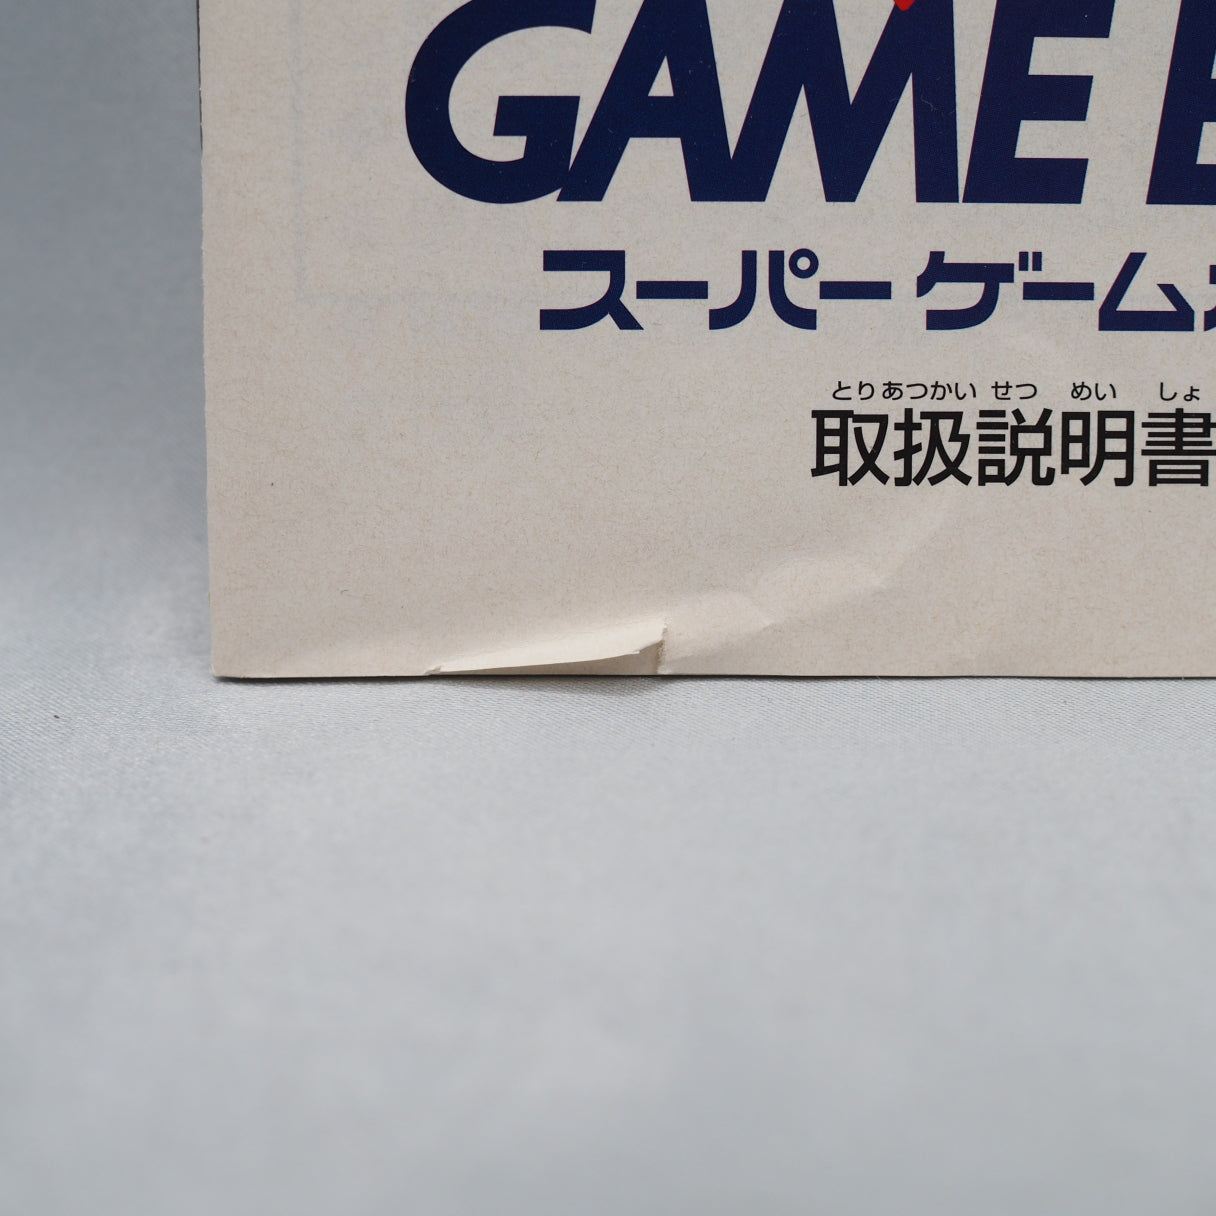 Super GAME BOY [for Nintendo Super Famicom] No.5